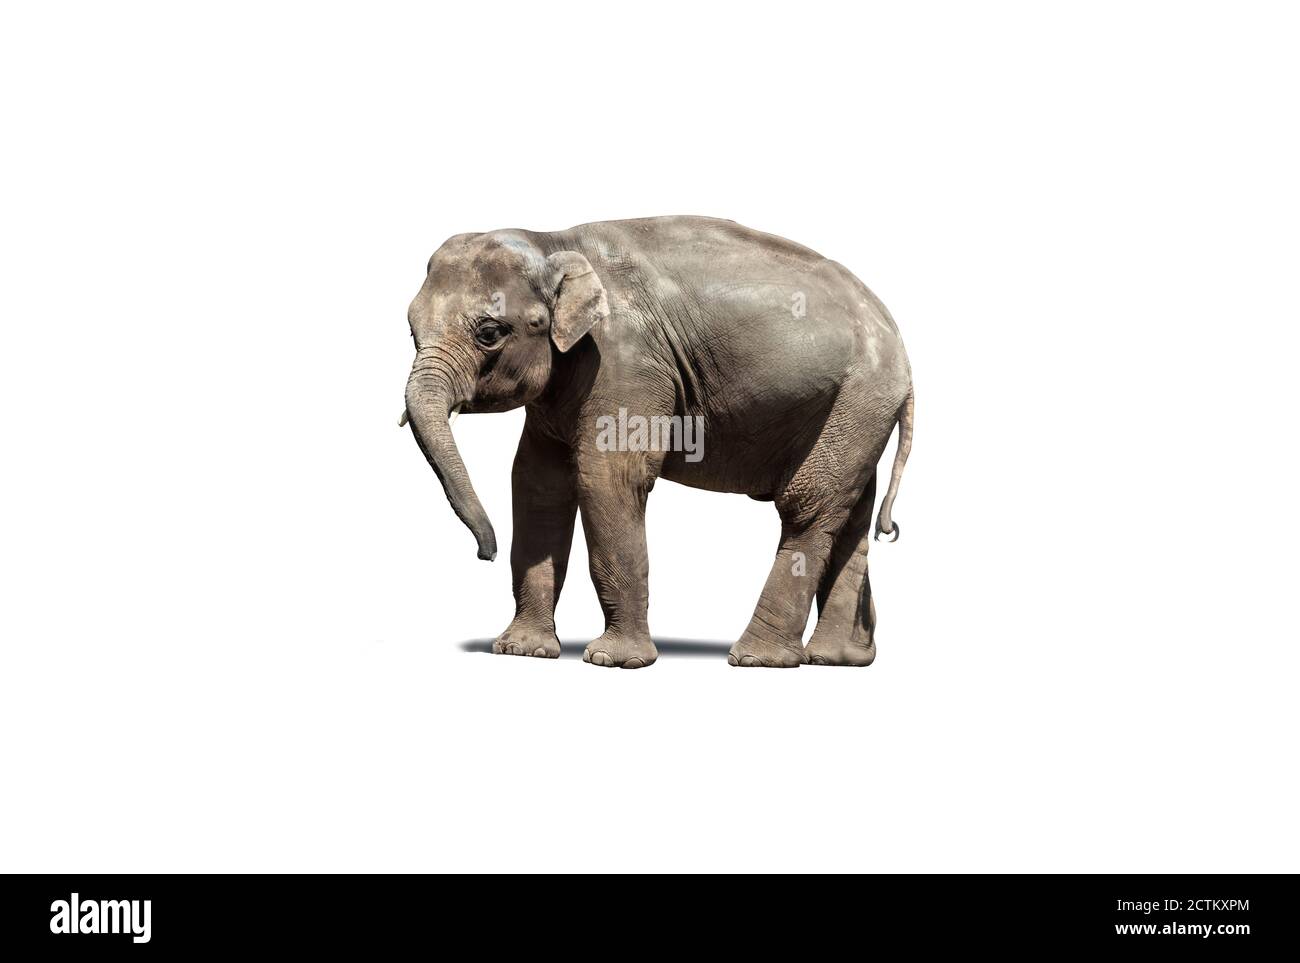 Bébé éléphant asiatique de veau, isolé sur un fond blanc. Masque (sans ombre). Banque D'Images